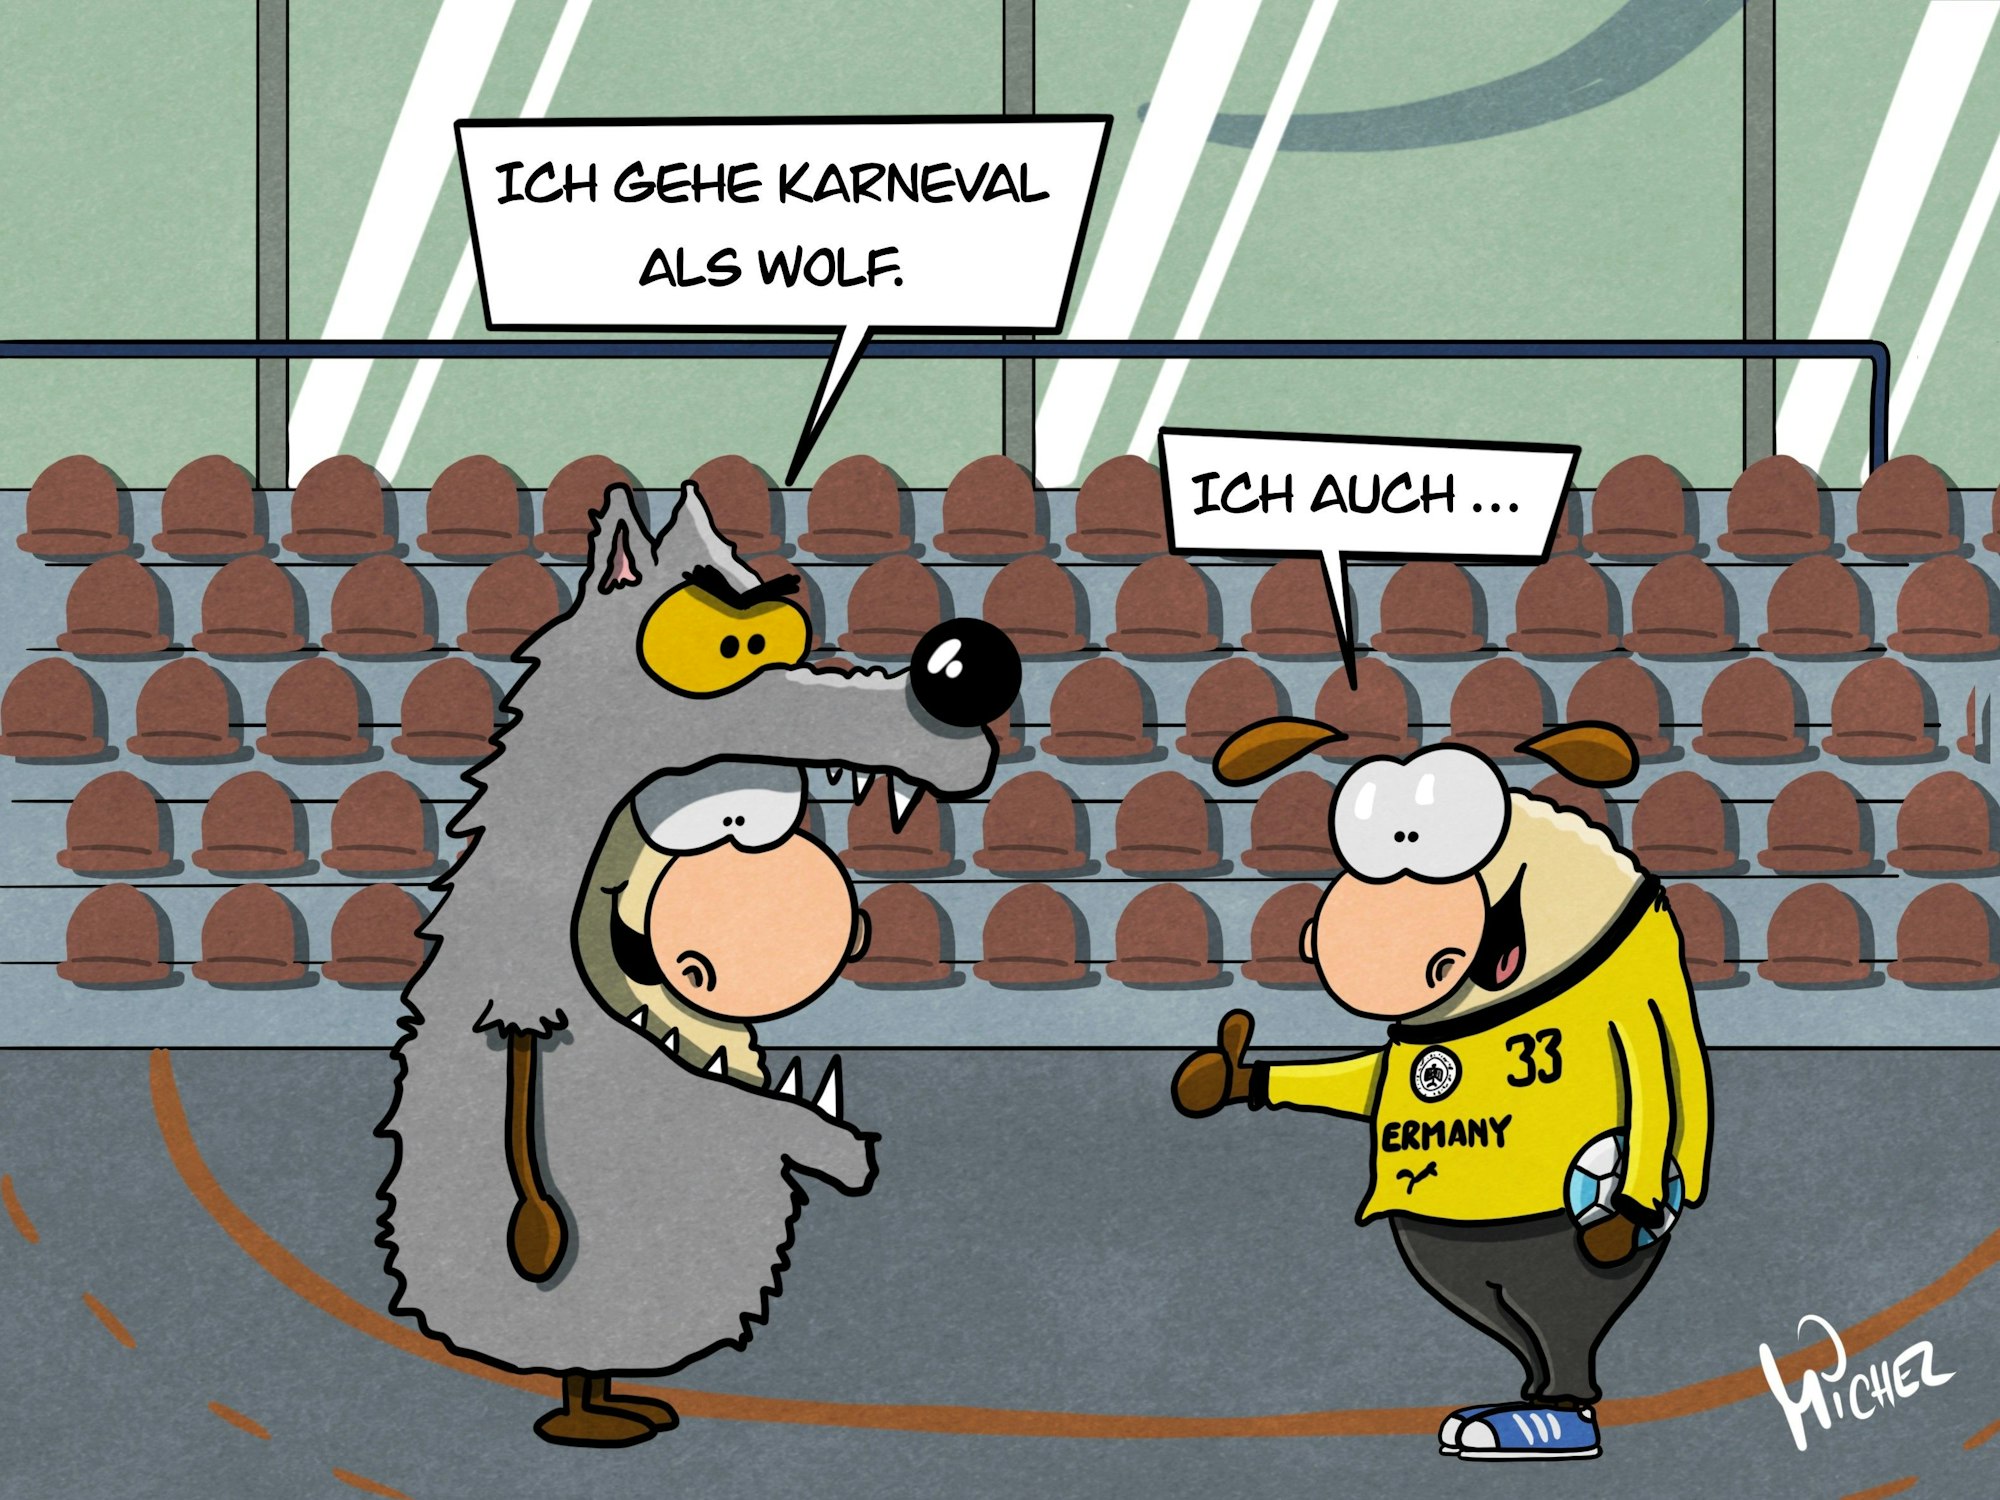 Zwei Schafe stehen in einer Handballhalle. Eines ist in einem Wolfskostüm verkleidet und sagt: „Ich gehe Karneval als Wolf.“ Das andere trägt ein gelbes Torhüter-Trikot mit der Nummer 33 des Handballers Andreas Wolff und sagt: „Ich auch …“